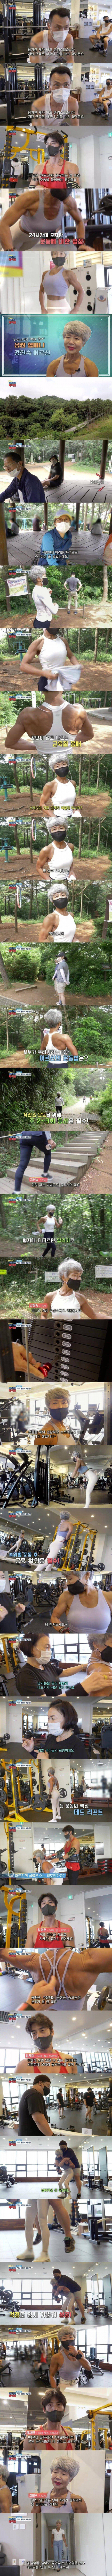 운동하는 70대 할머니의 신체.jpeg